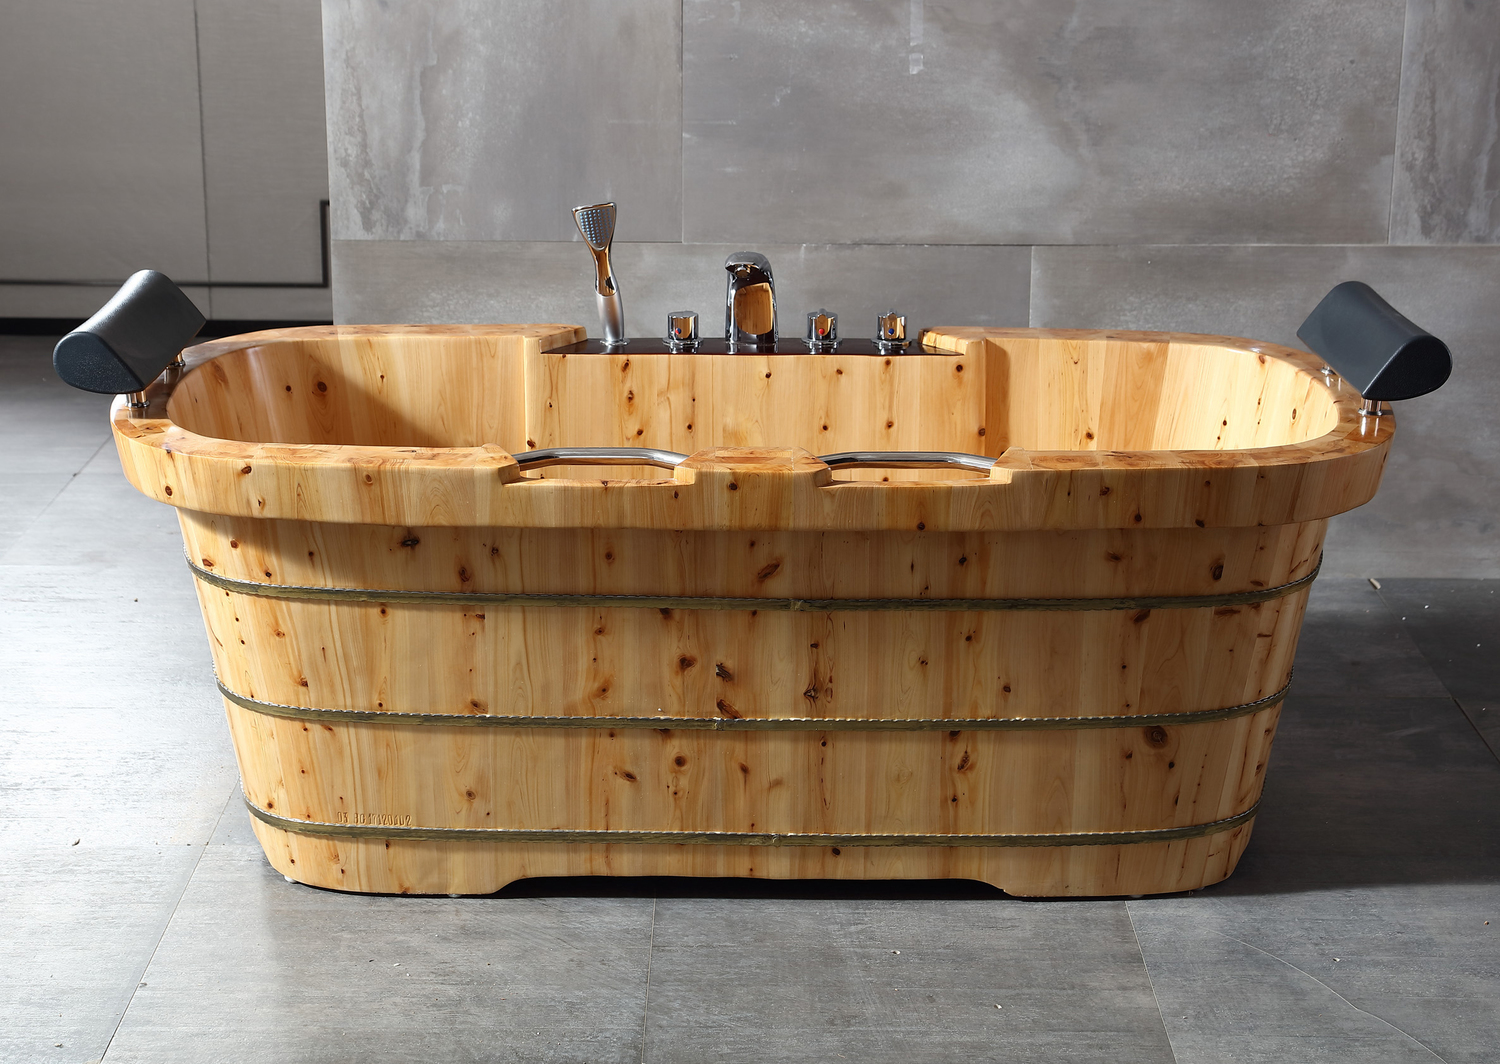 Bạn đang tìm kiếm sự mộc mạc cho không gian thư giãn? Vậy thì chiếc bồn tắm bằng gỗ này chính là gợi ý hoàn hảo dành cho bạn. Nó mang một vẻ ngoài với thiết kế cổ điển nhưng các chi tiết bằng kim loại đi kèm thì lại vô cùng tiện nghi và hiện đại.